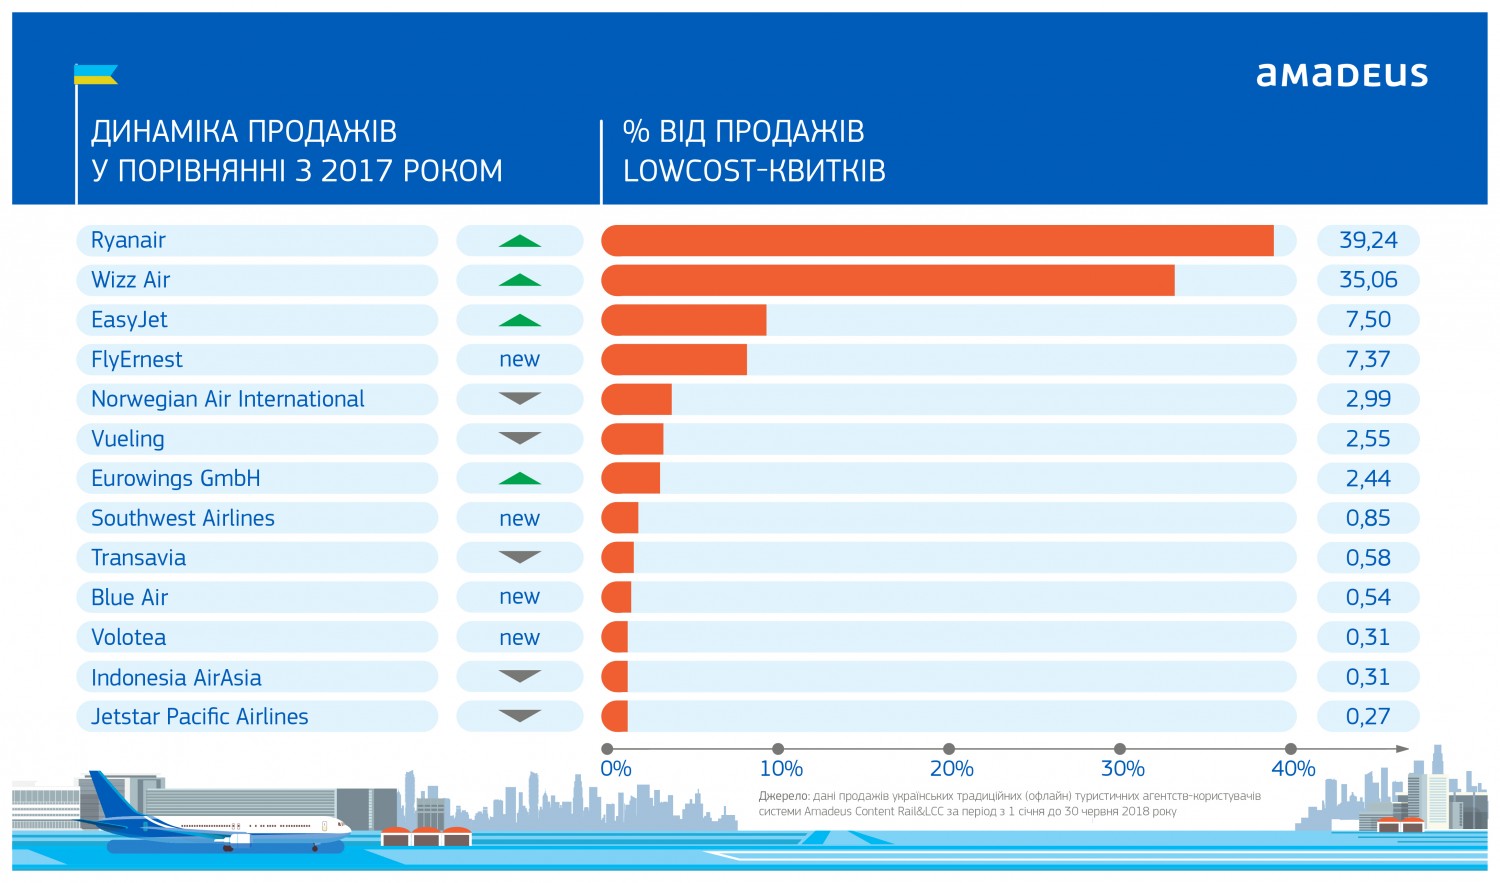 «Амадеус Україна» поділилася рейтингом лоукост-авіакомпаній в Україні